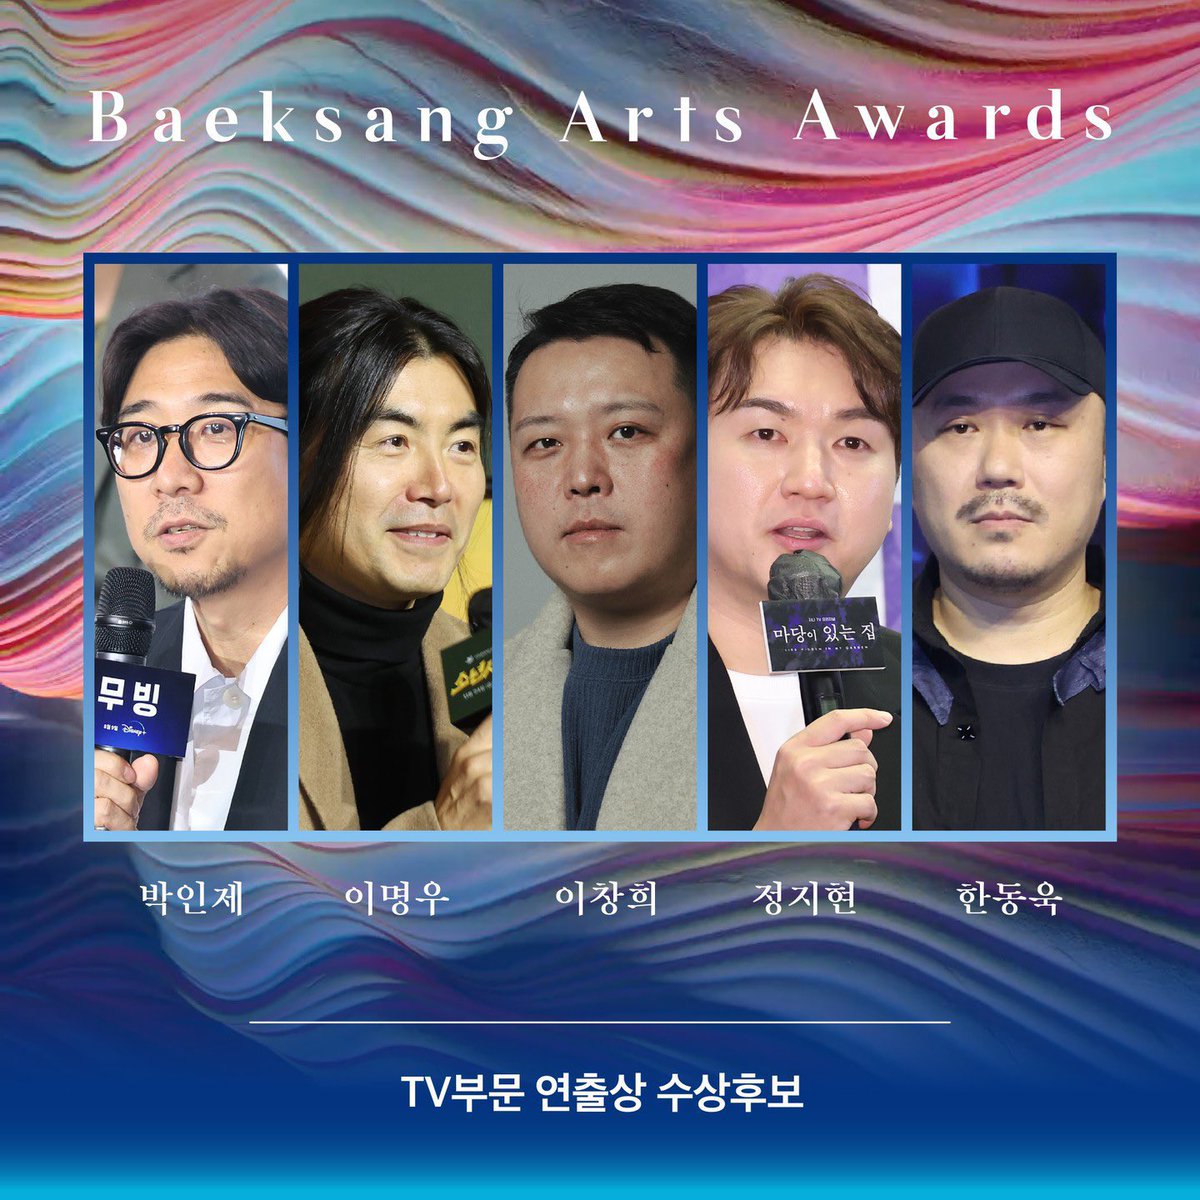 Nominasi Best Director Kategori Series: 

Park Inje #Moving
Lee Myungwoo #Boyhood
Lee Changhee #AKillerParadox
Jung Jihyun #LiesHiddenInMyGarden
Han Dongwook #TheWorstEvil